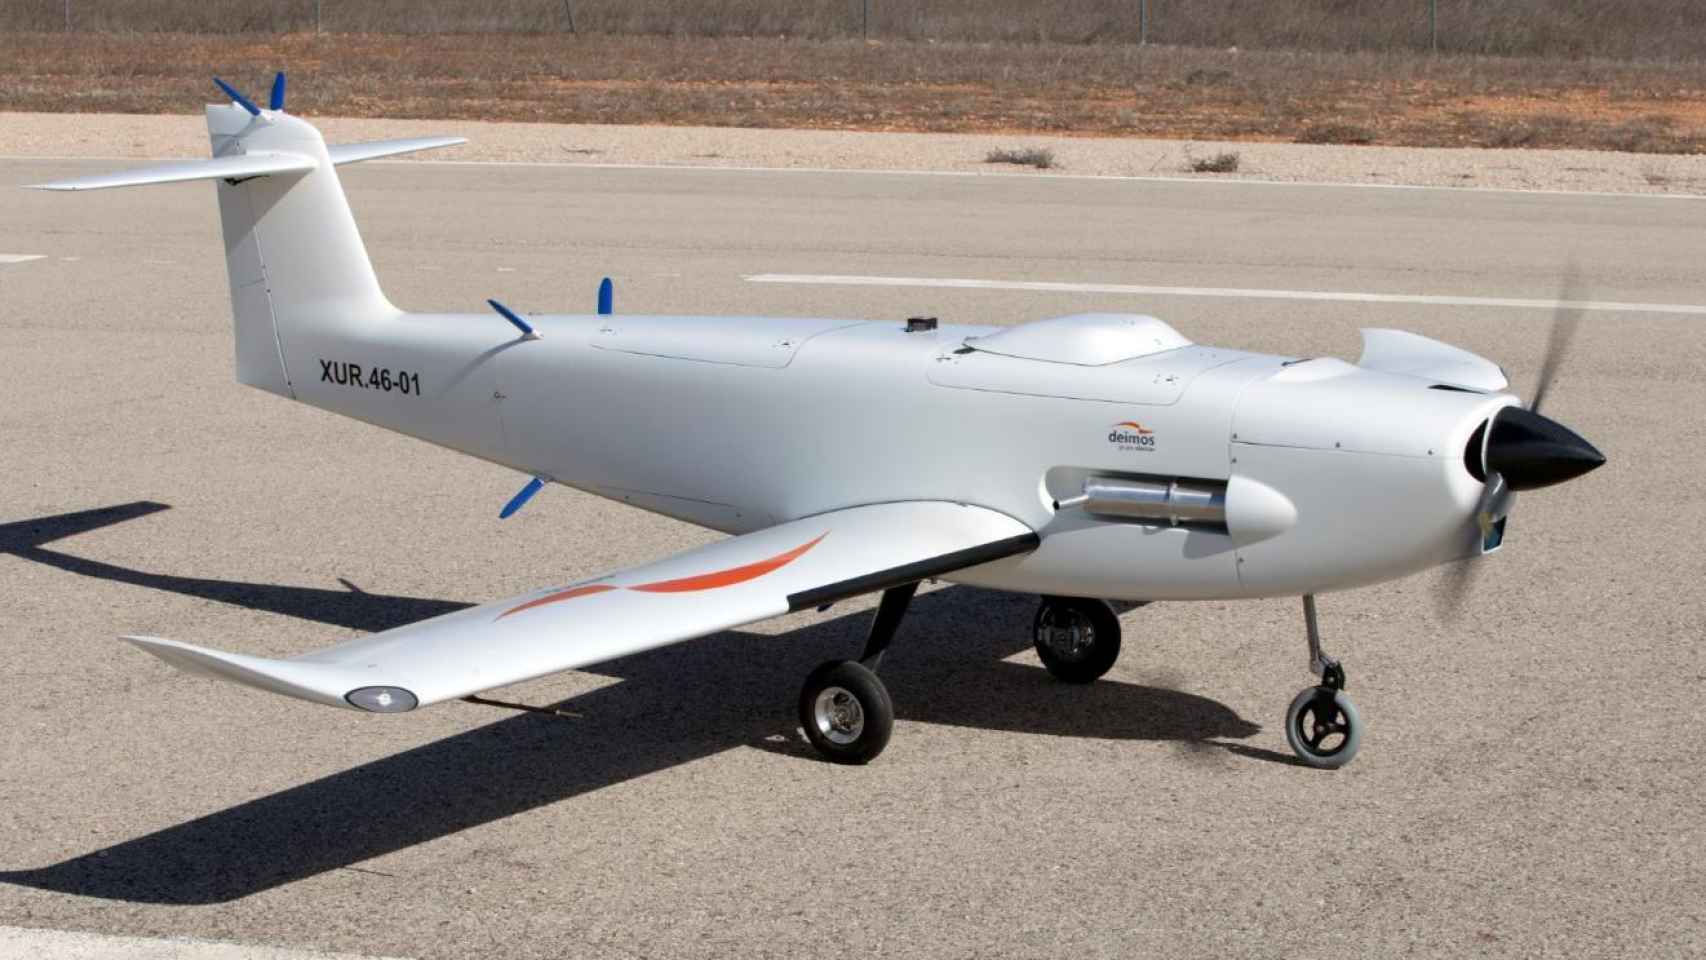 Prototipo de avión no tripulado entregado por Elecnor a la Defensa francesa.